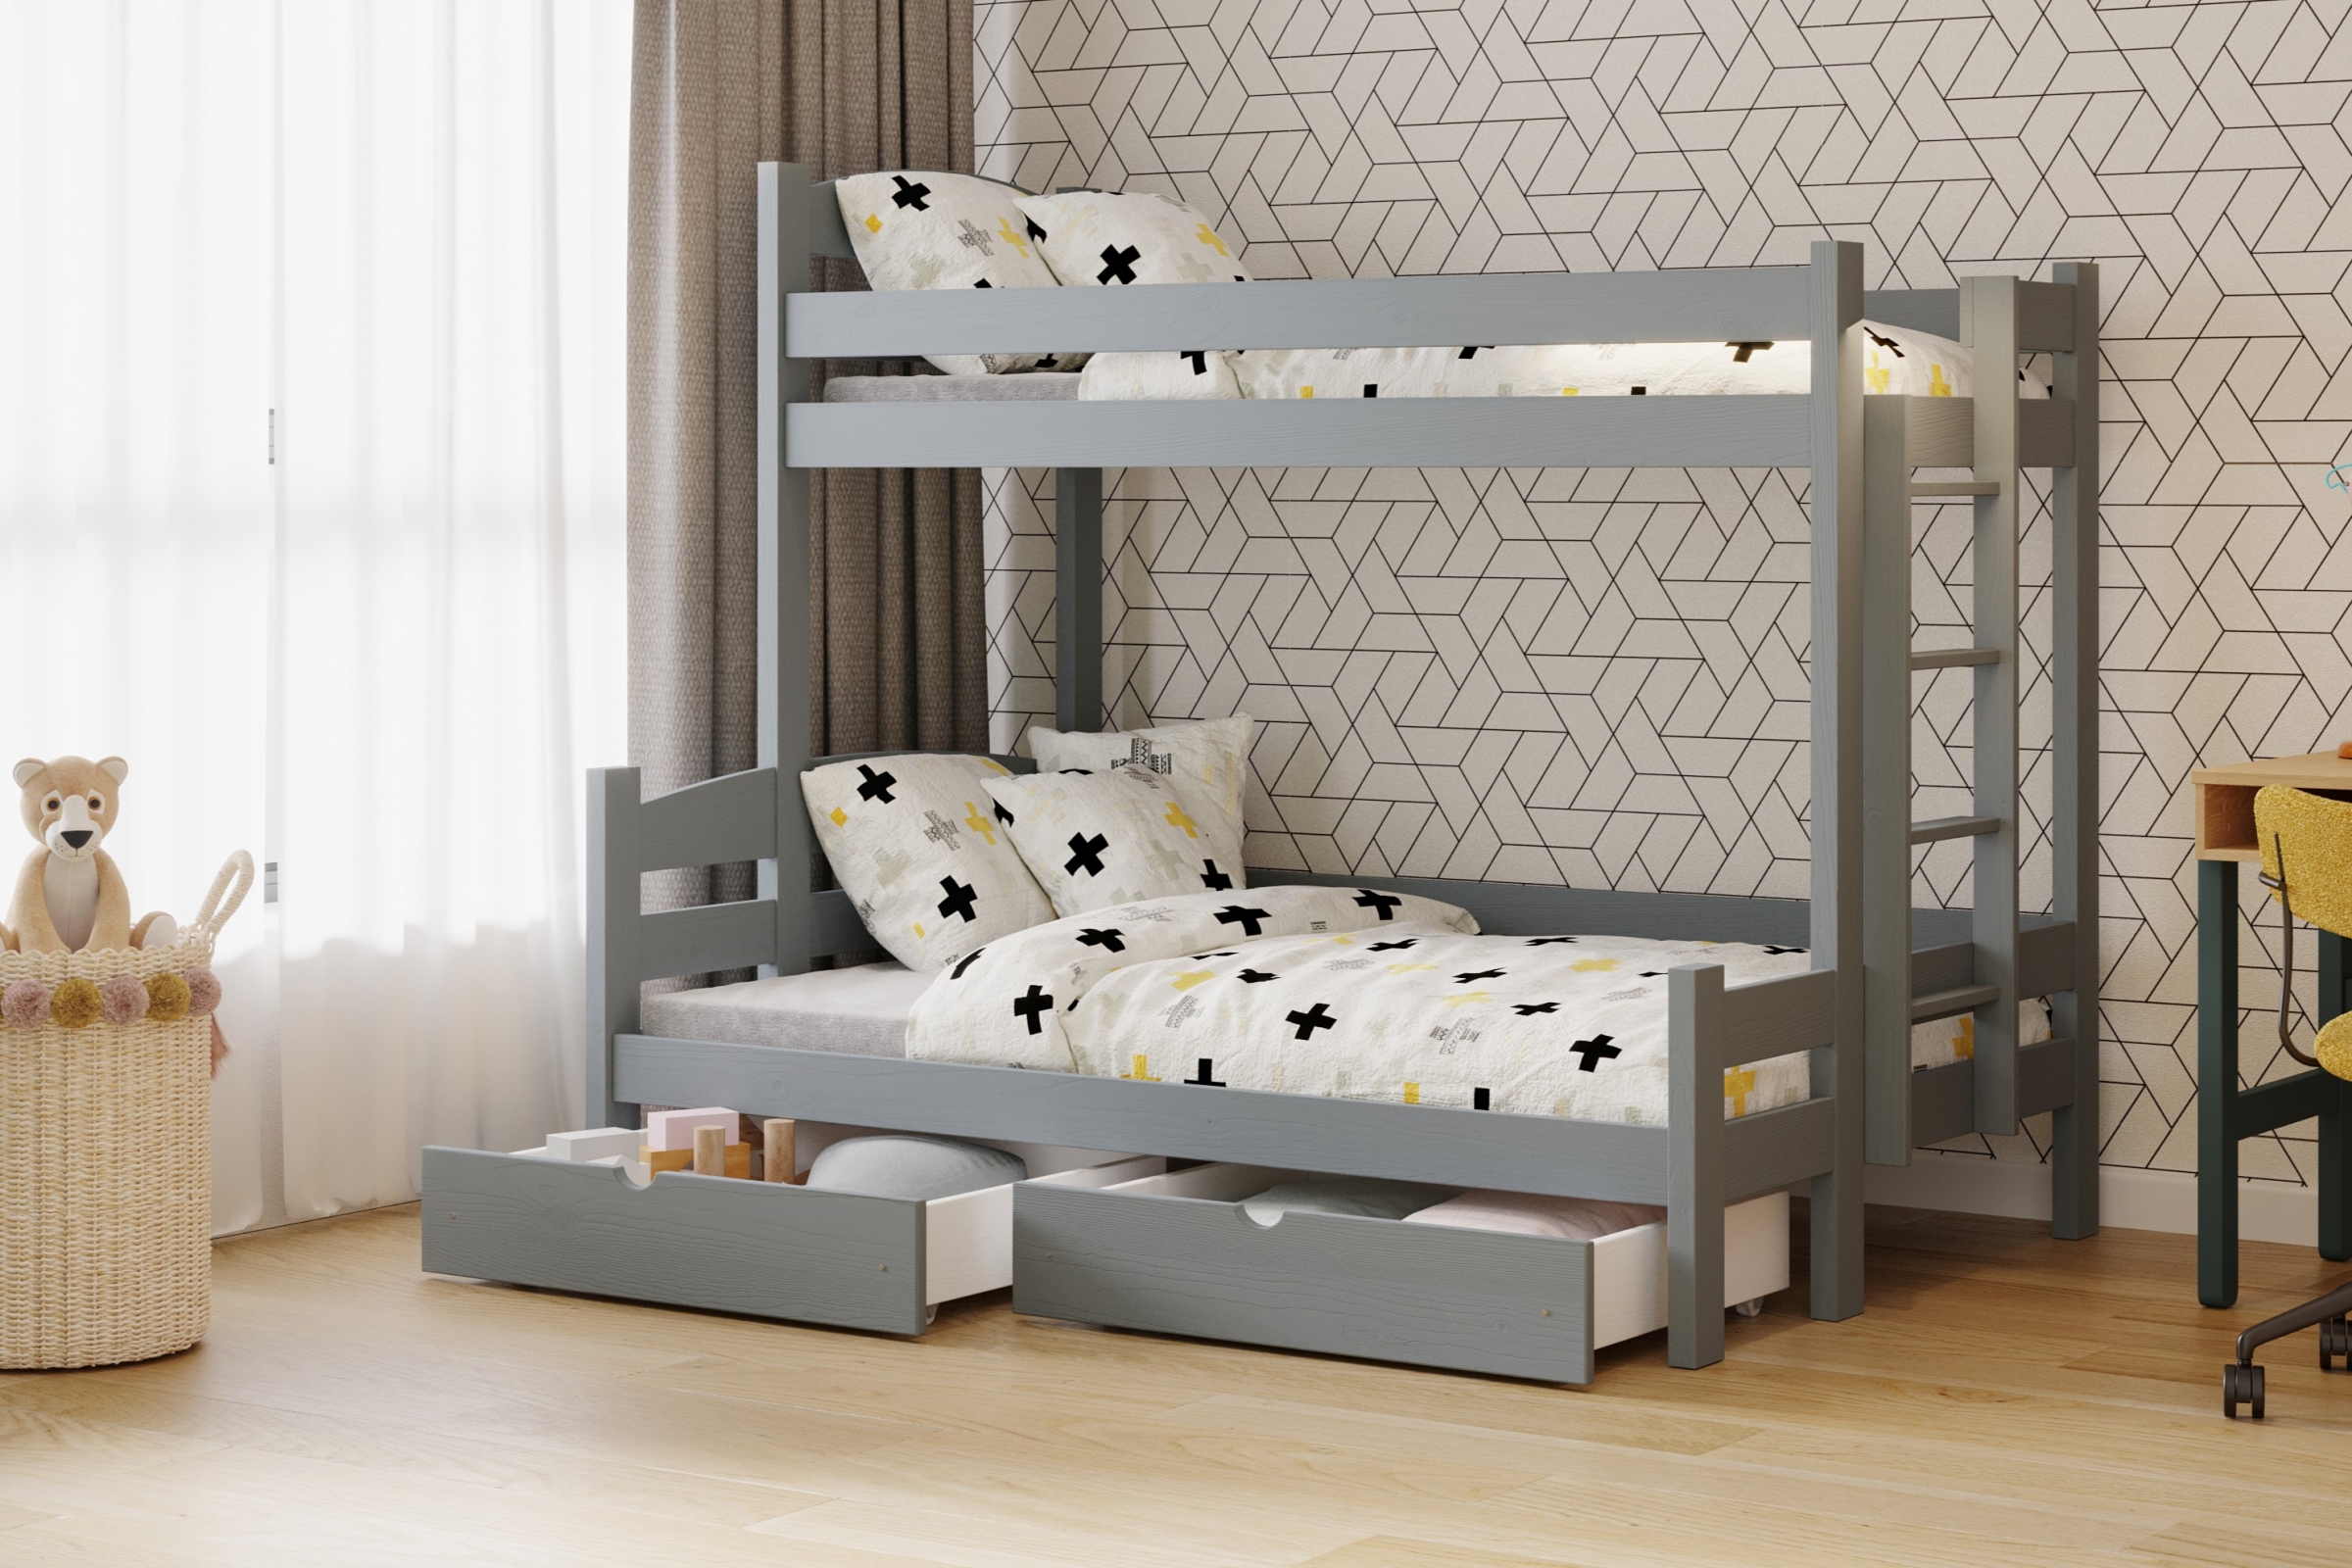 Lovic emeletes ágy, fiókokkal, jobb oldali - 90x200 cm/120x200 cm - grafitszürke Emeletes ágy fiokokkal Lovic - grafitszürke - aranzacja